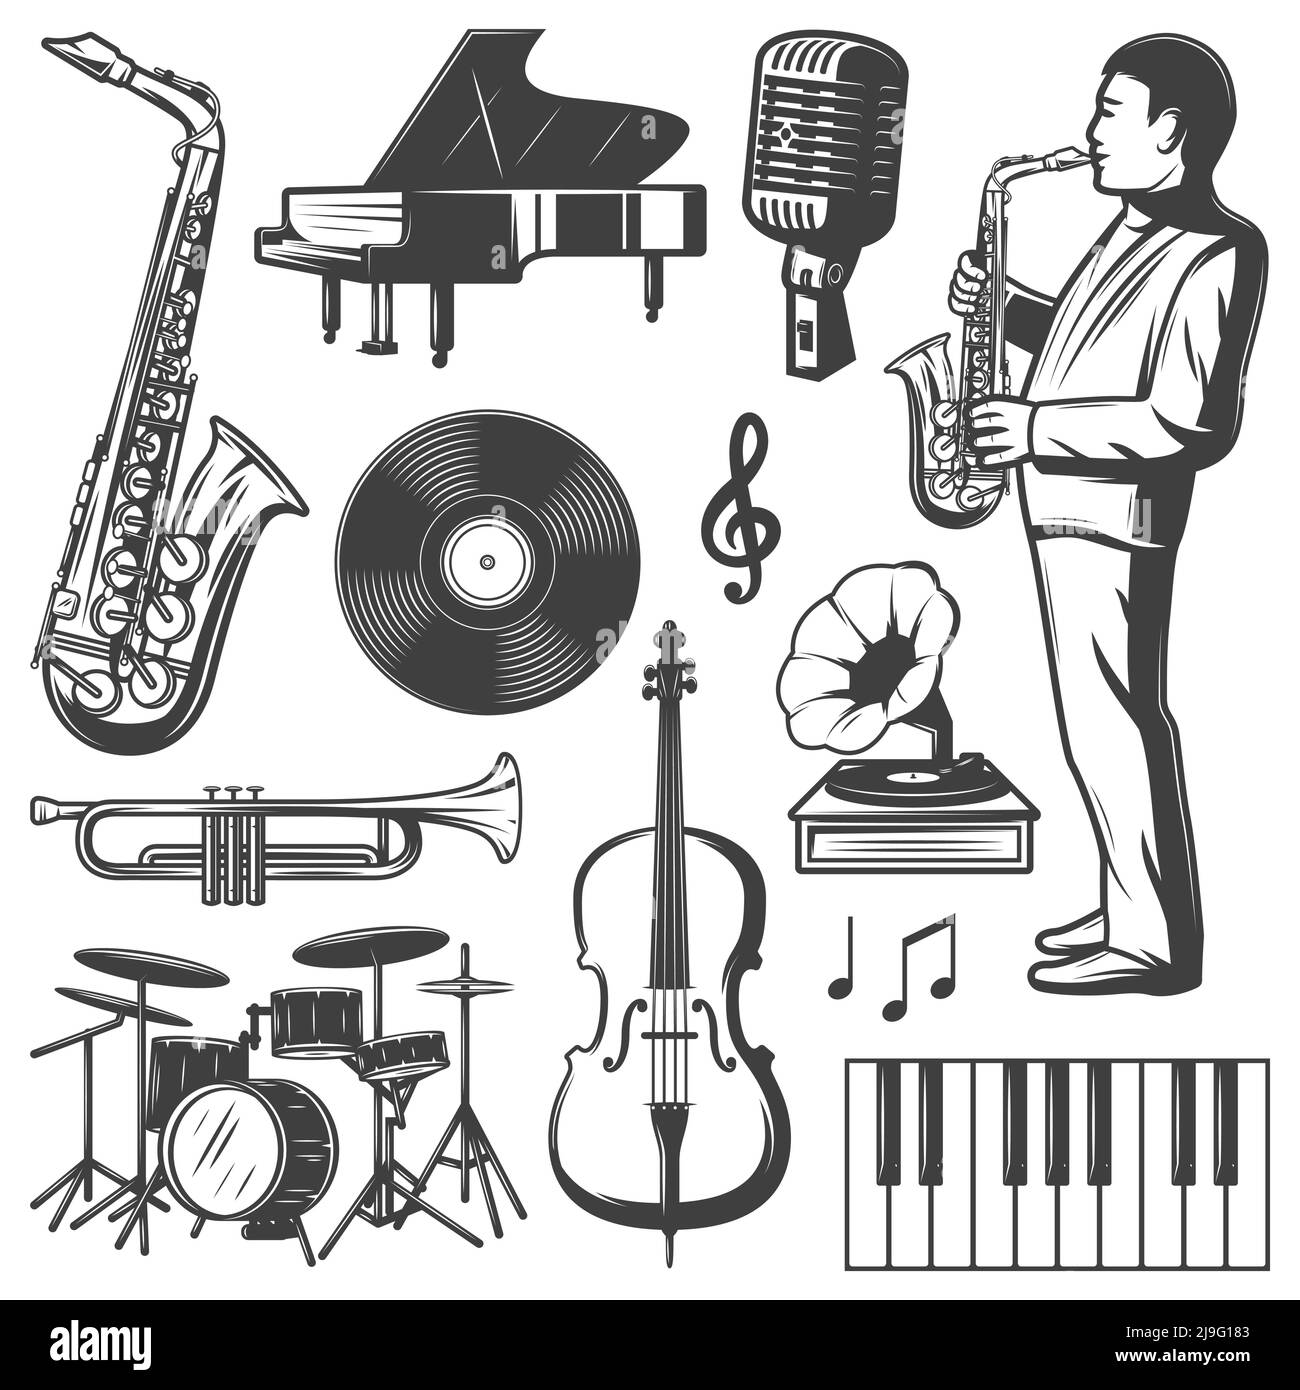 Collection d'éléments de musique jazz vintage avec percussions de piano saxophone musicien microphone gramophone violon trompette vinyle illustration vectorielle isolée Illustration de Vecteur